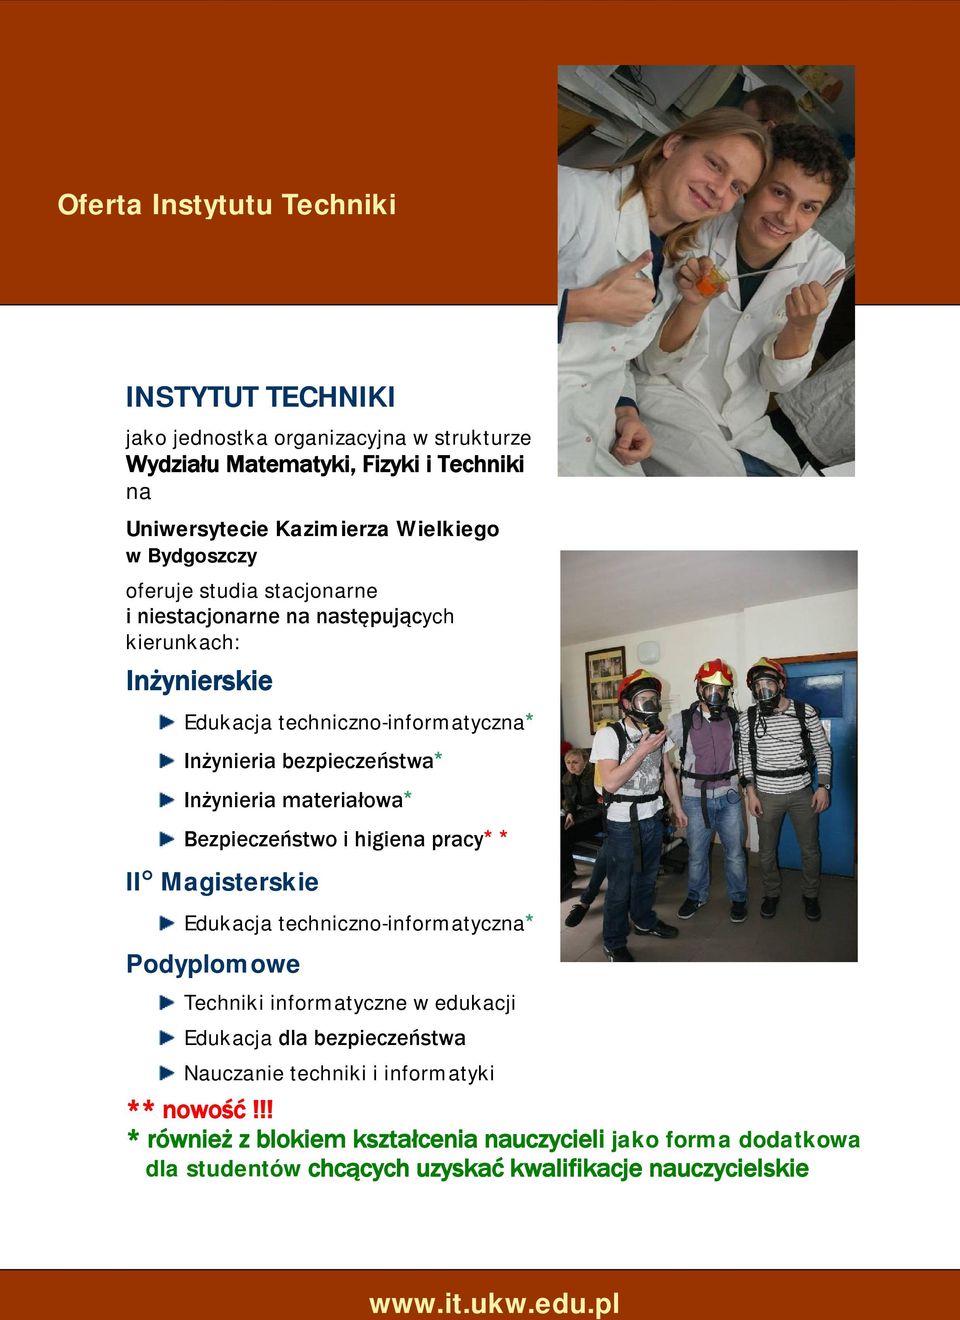 Inżynieria materiałowa* Bezpieczeństwo i higiena pracy** II Magisterskie Edukacja techniczno-informatyczna* Podyplomowe Techniki informatyczne w edukacji Edukacja dla